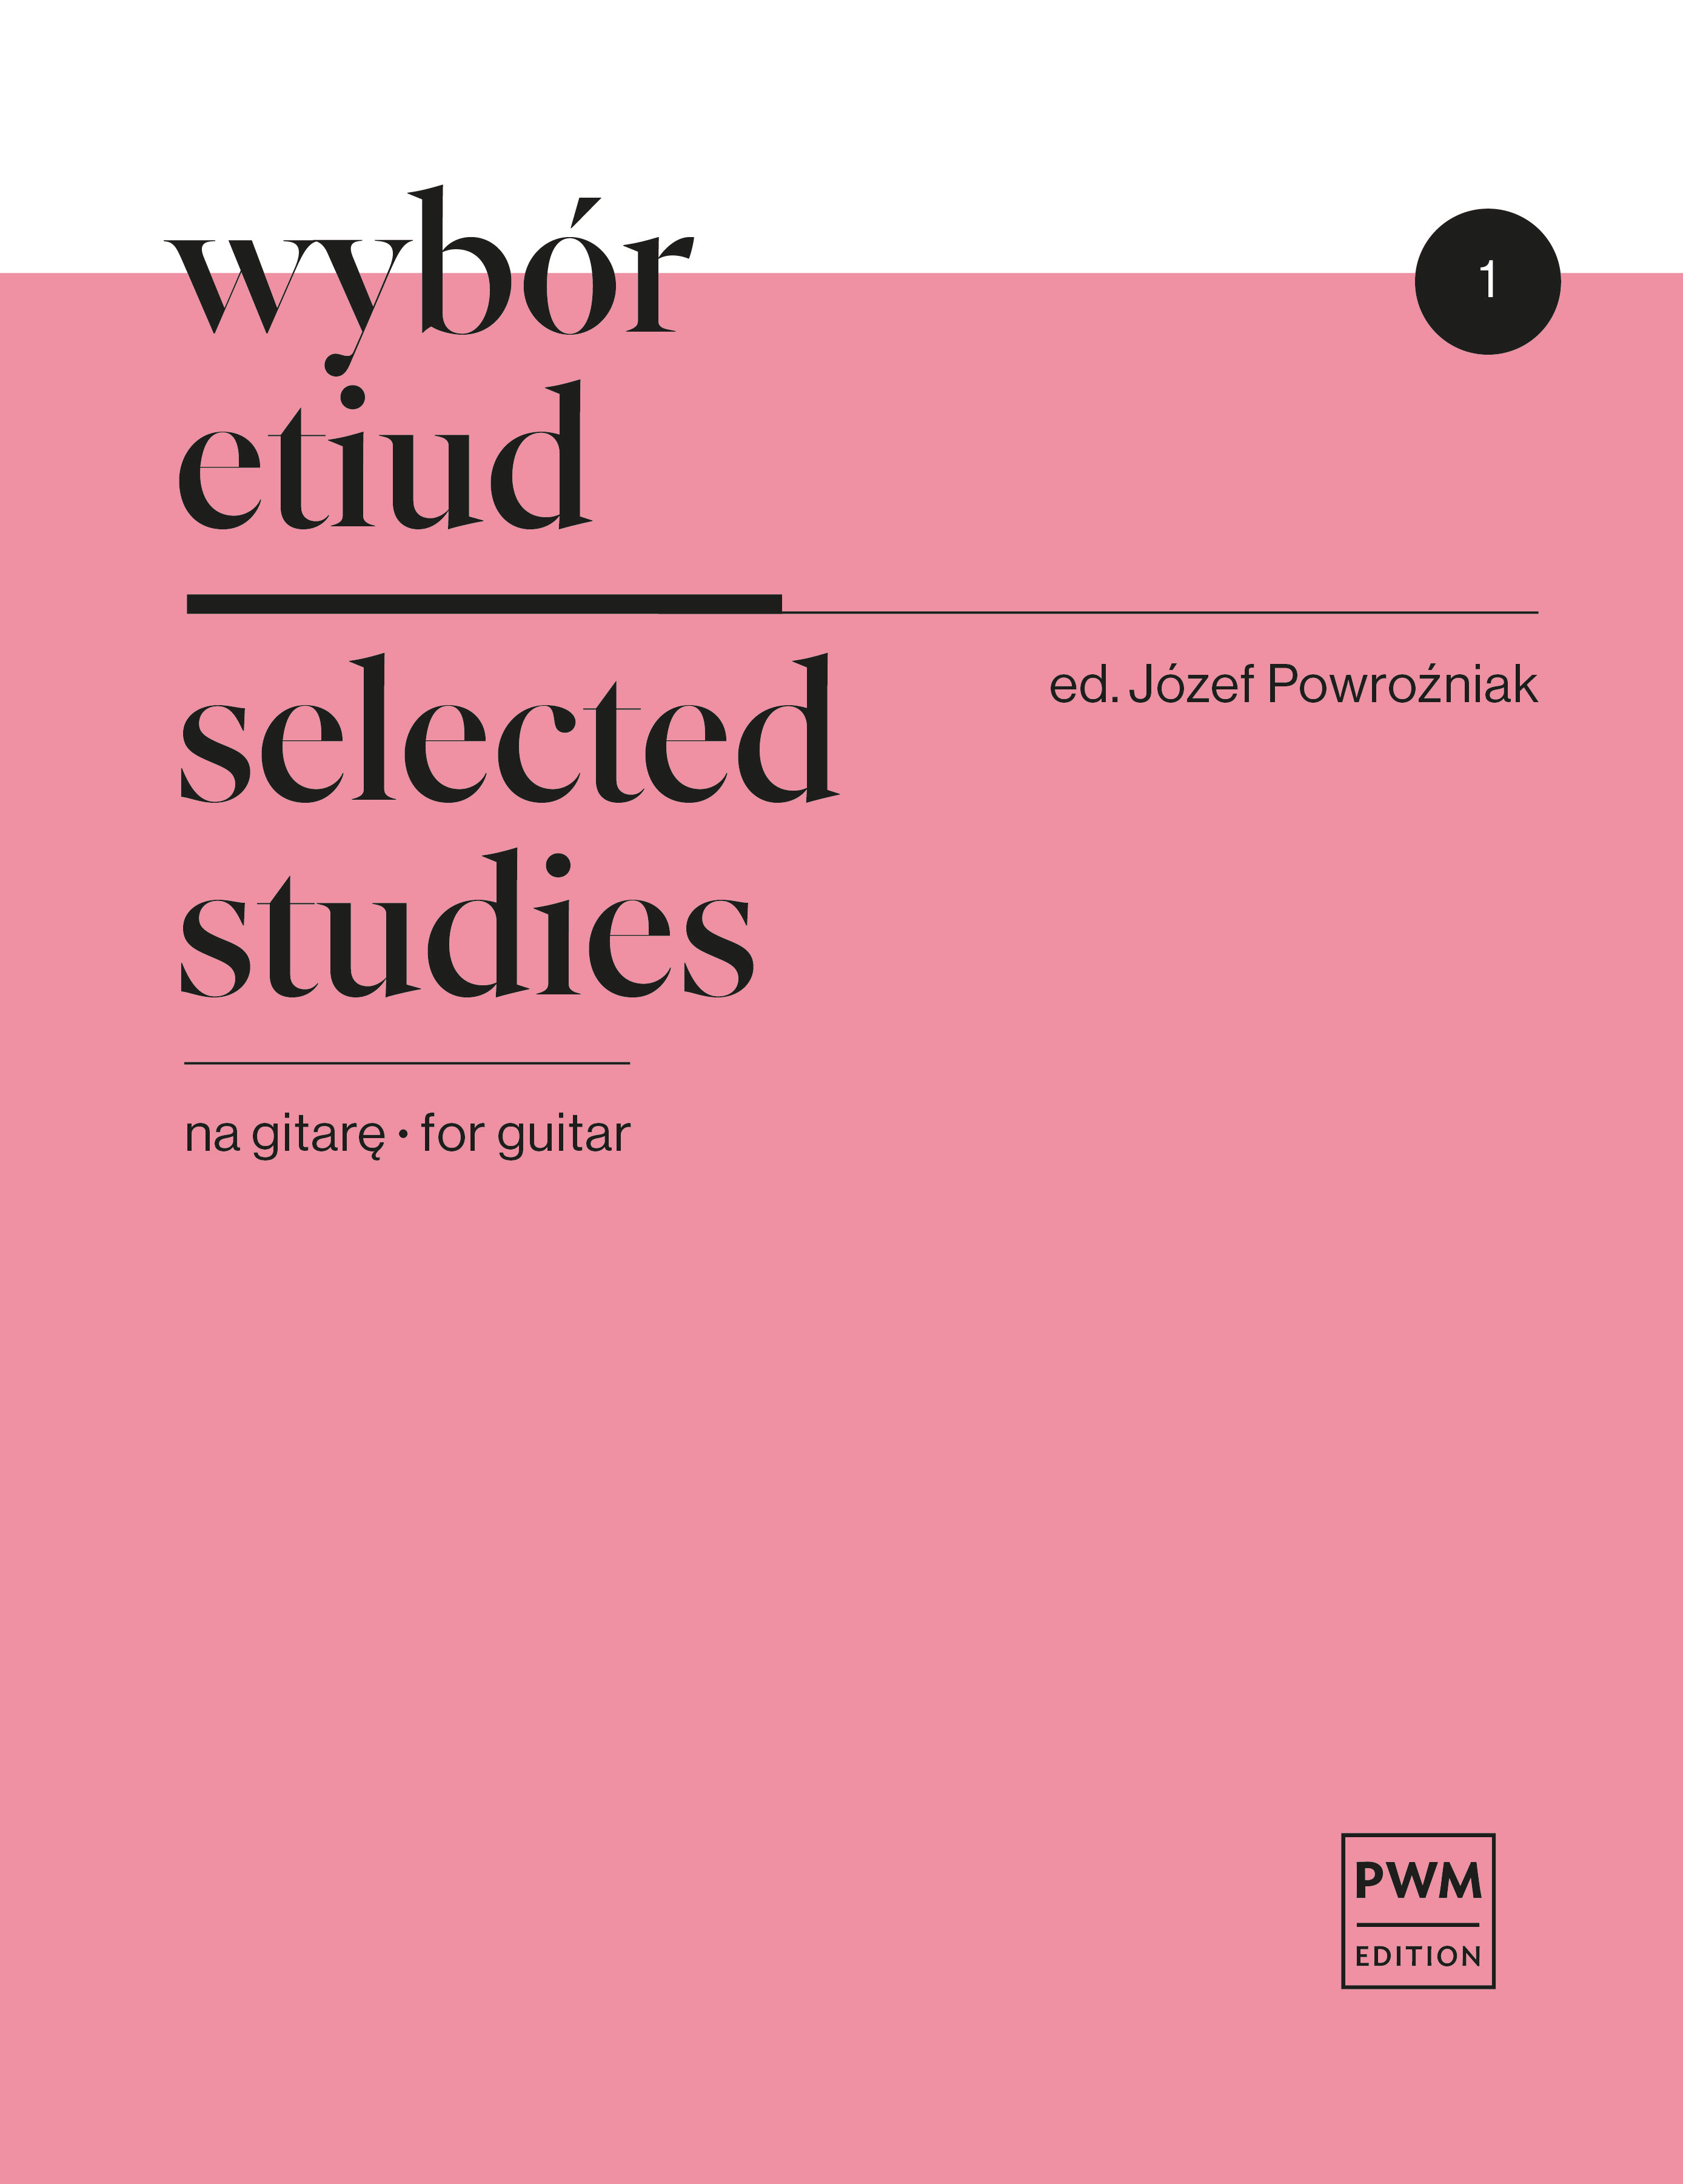 Joseph Powrozniak: Selected Studies  Book 1: Guitar: Study